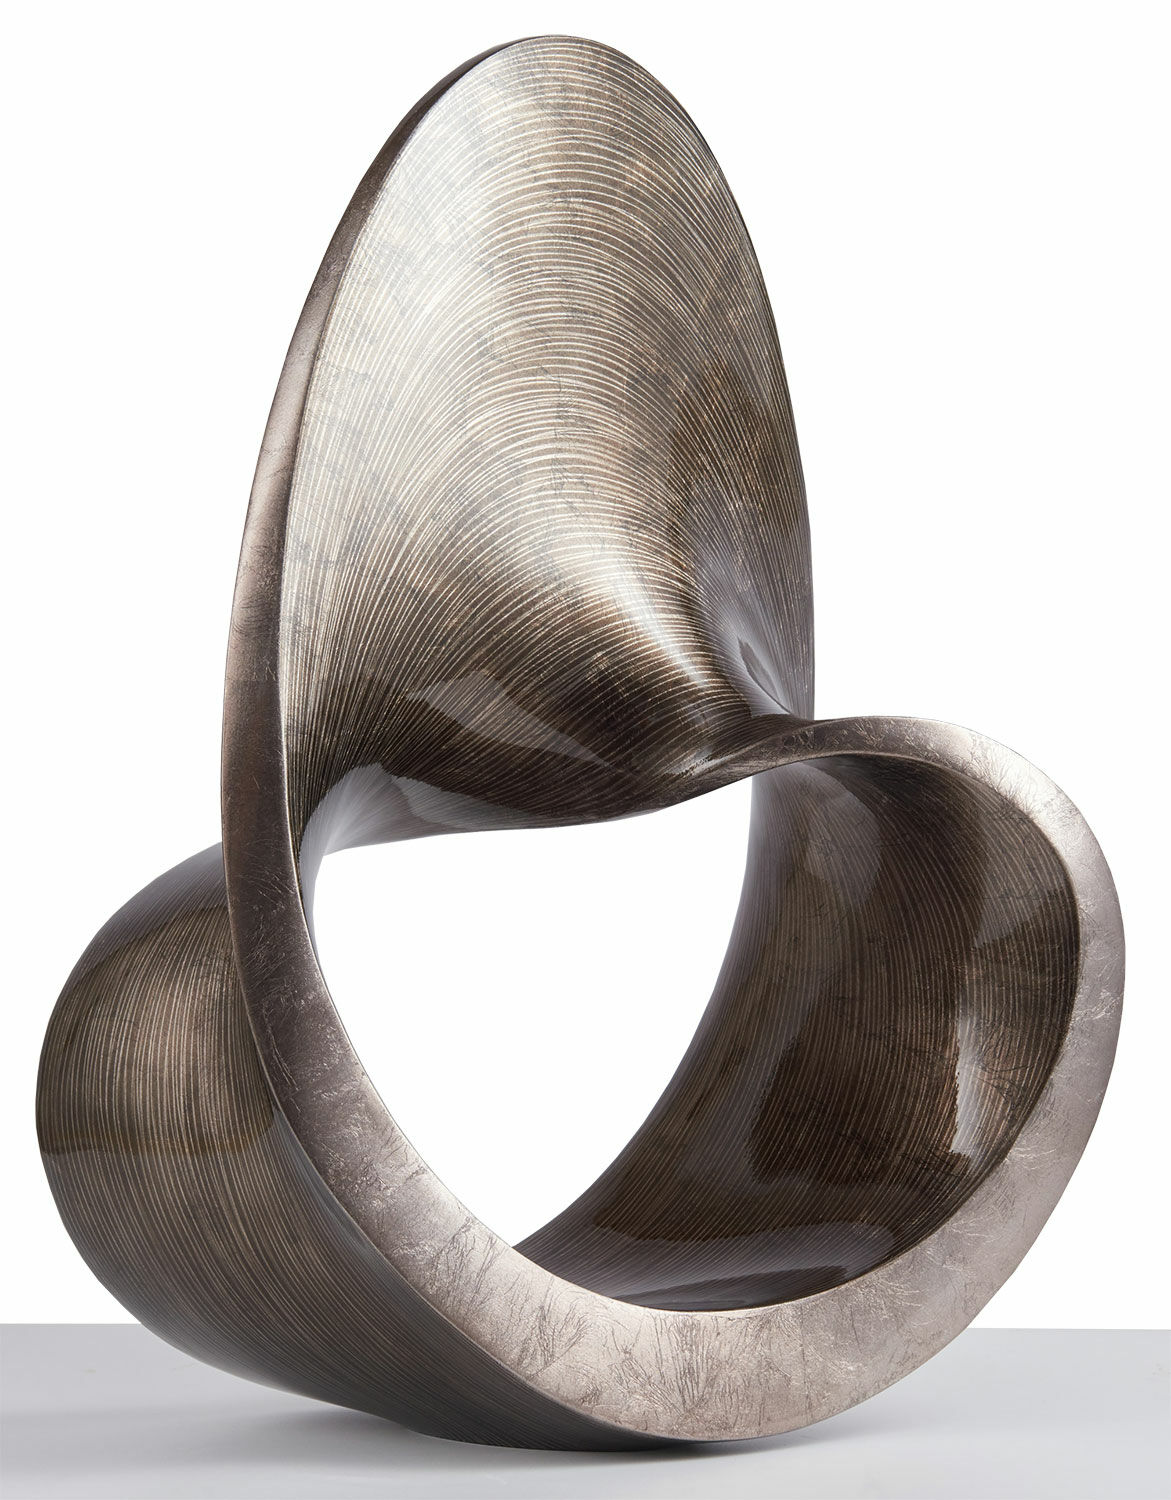 Skulptur "Spirale", Kunstguss